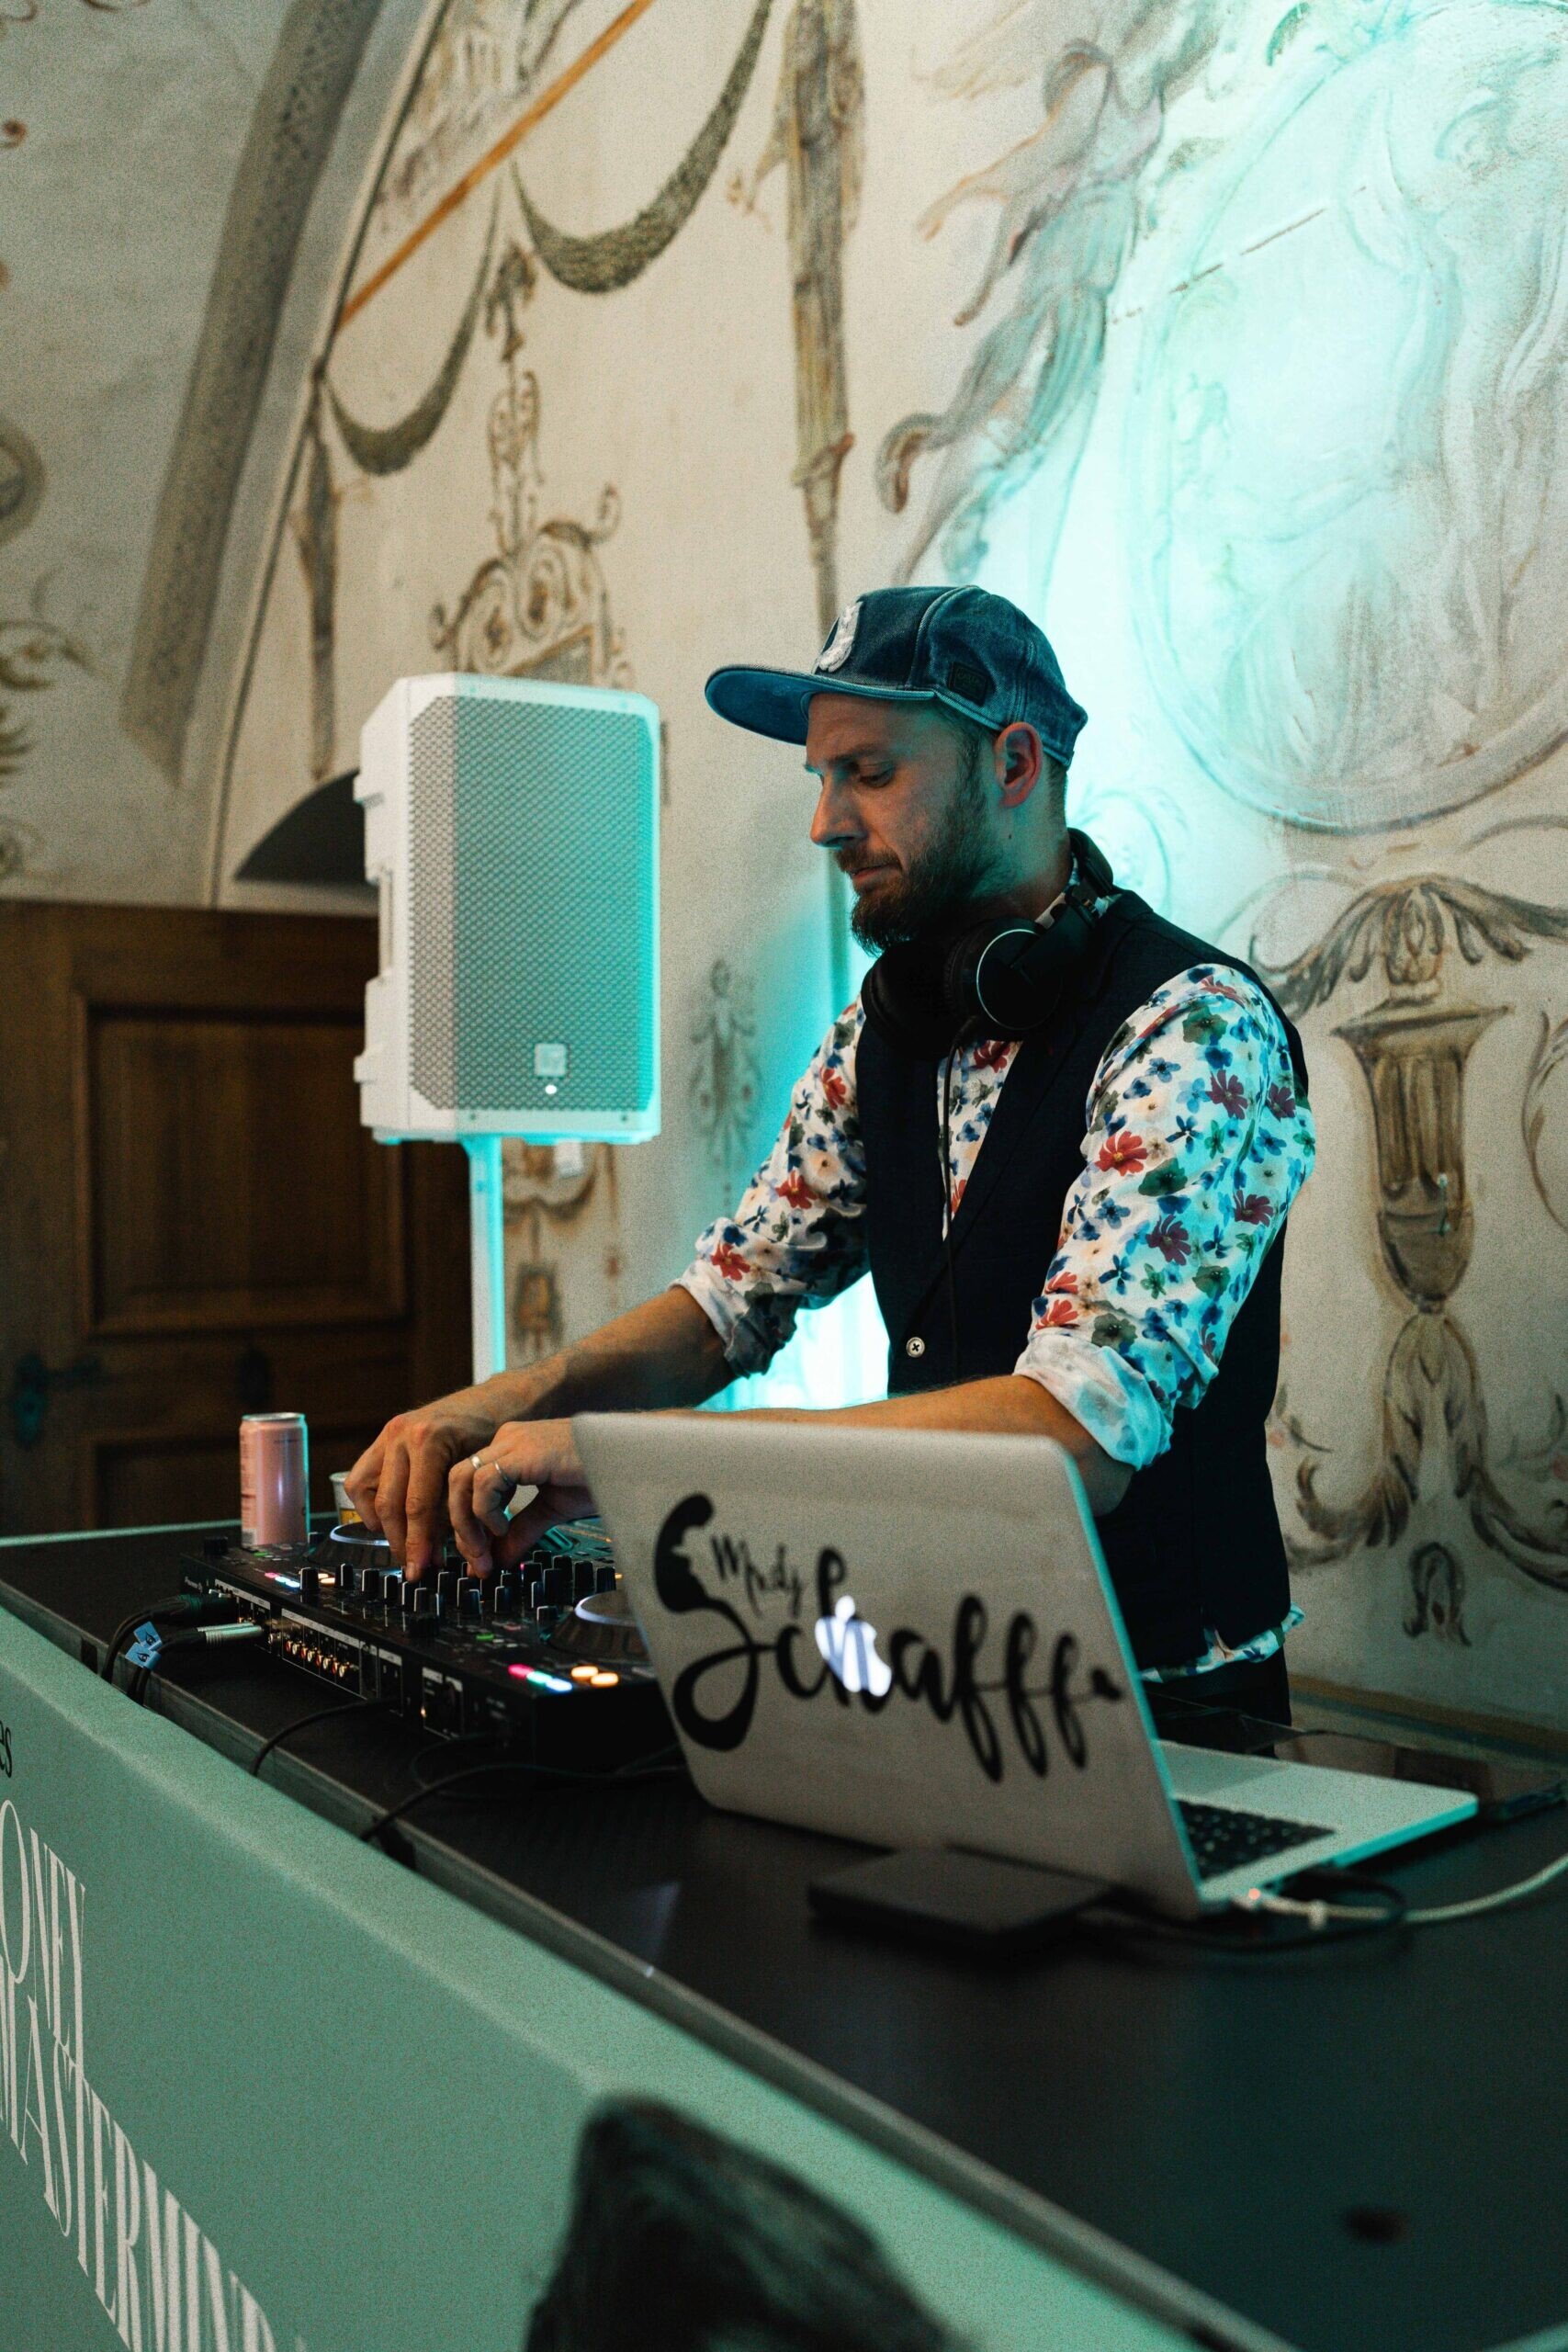 Partymaker DJ Schafff rozhýbal publikum chytlavými rytmy a cílem vykřesat jen tu nejlepší energii.